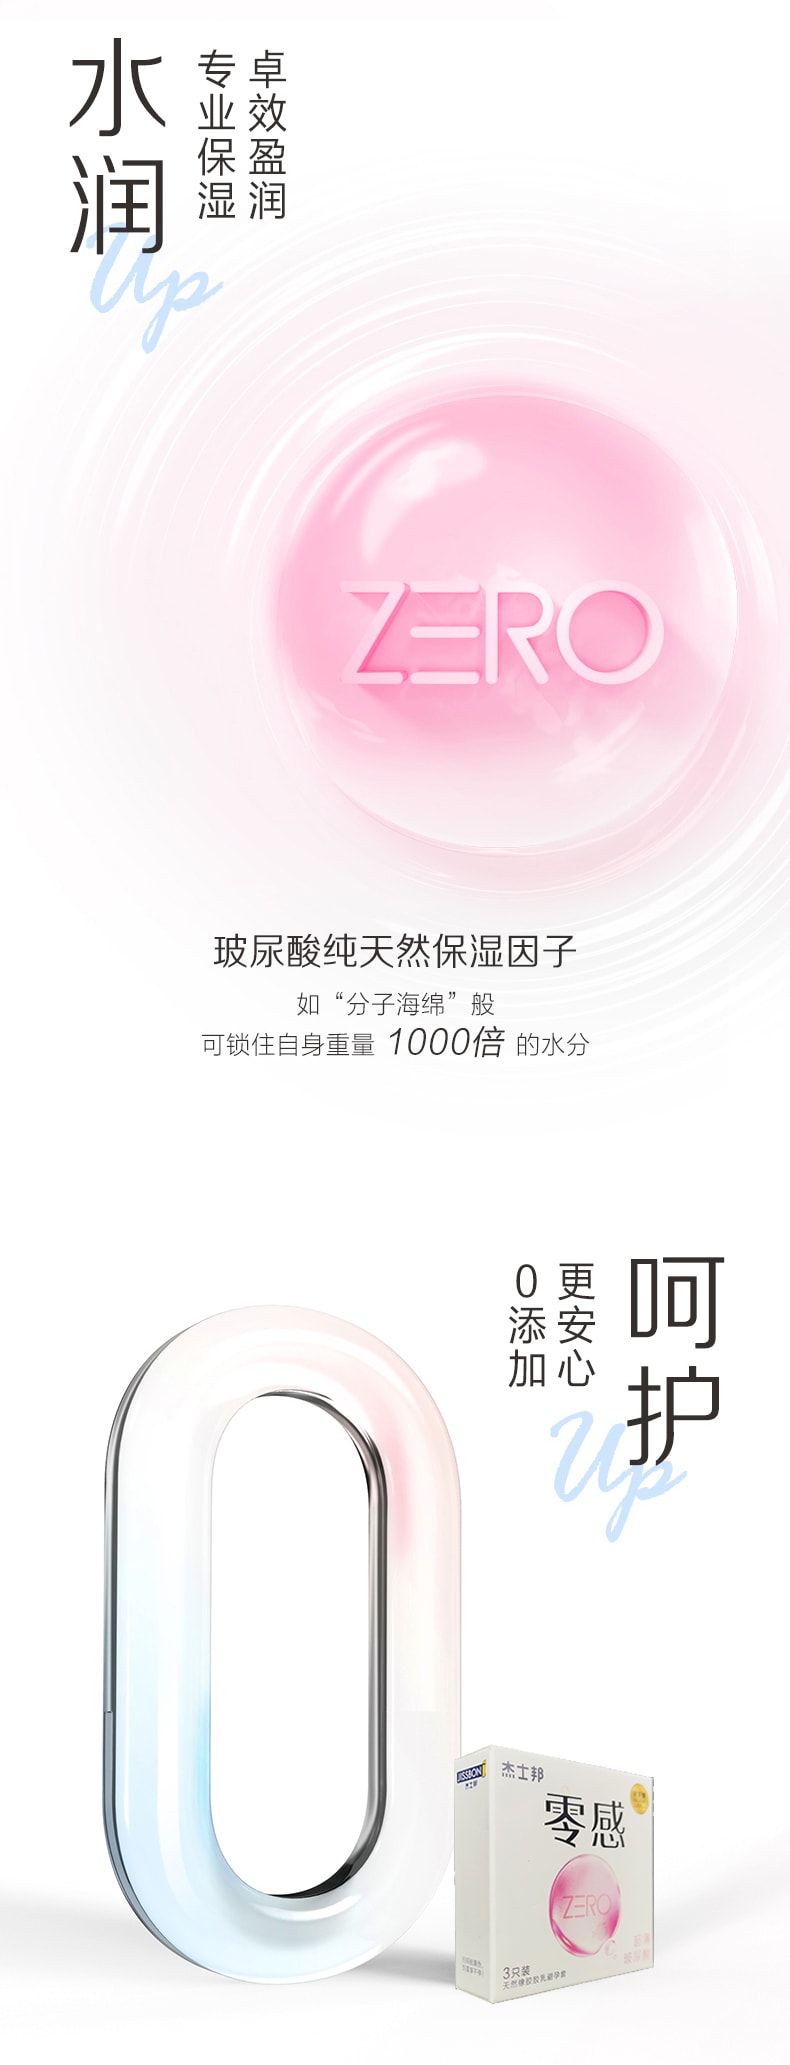 【正品保真】傑士邦零感超薄透明質酸 ZERO零感保險套 計生用品 保險套3只裝